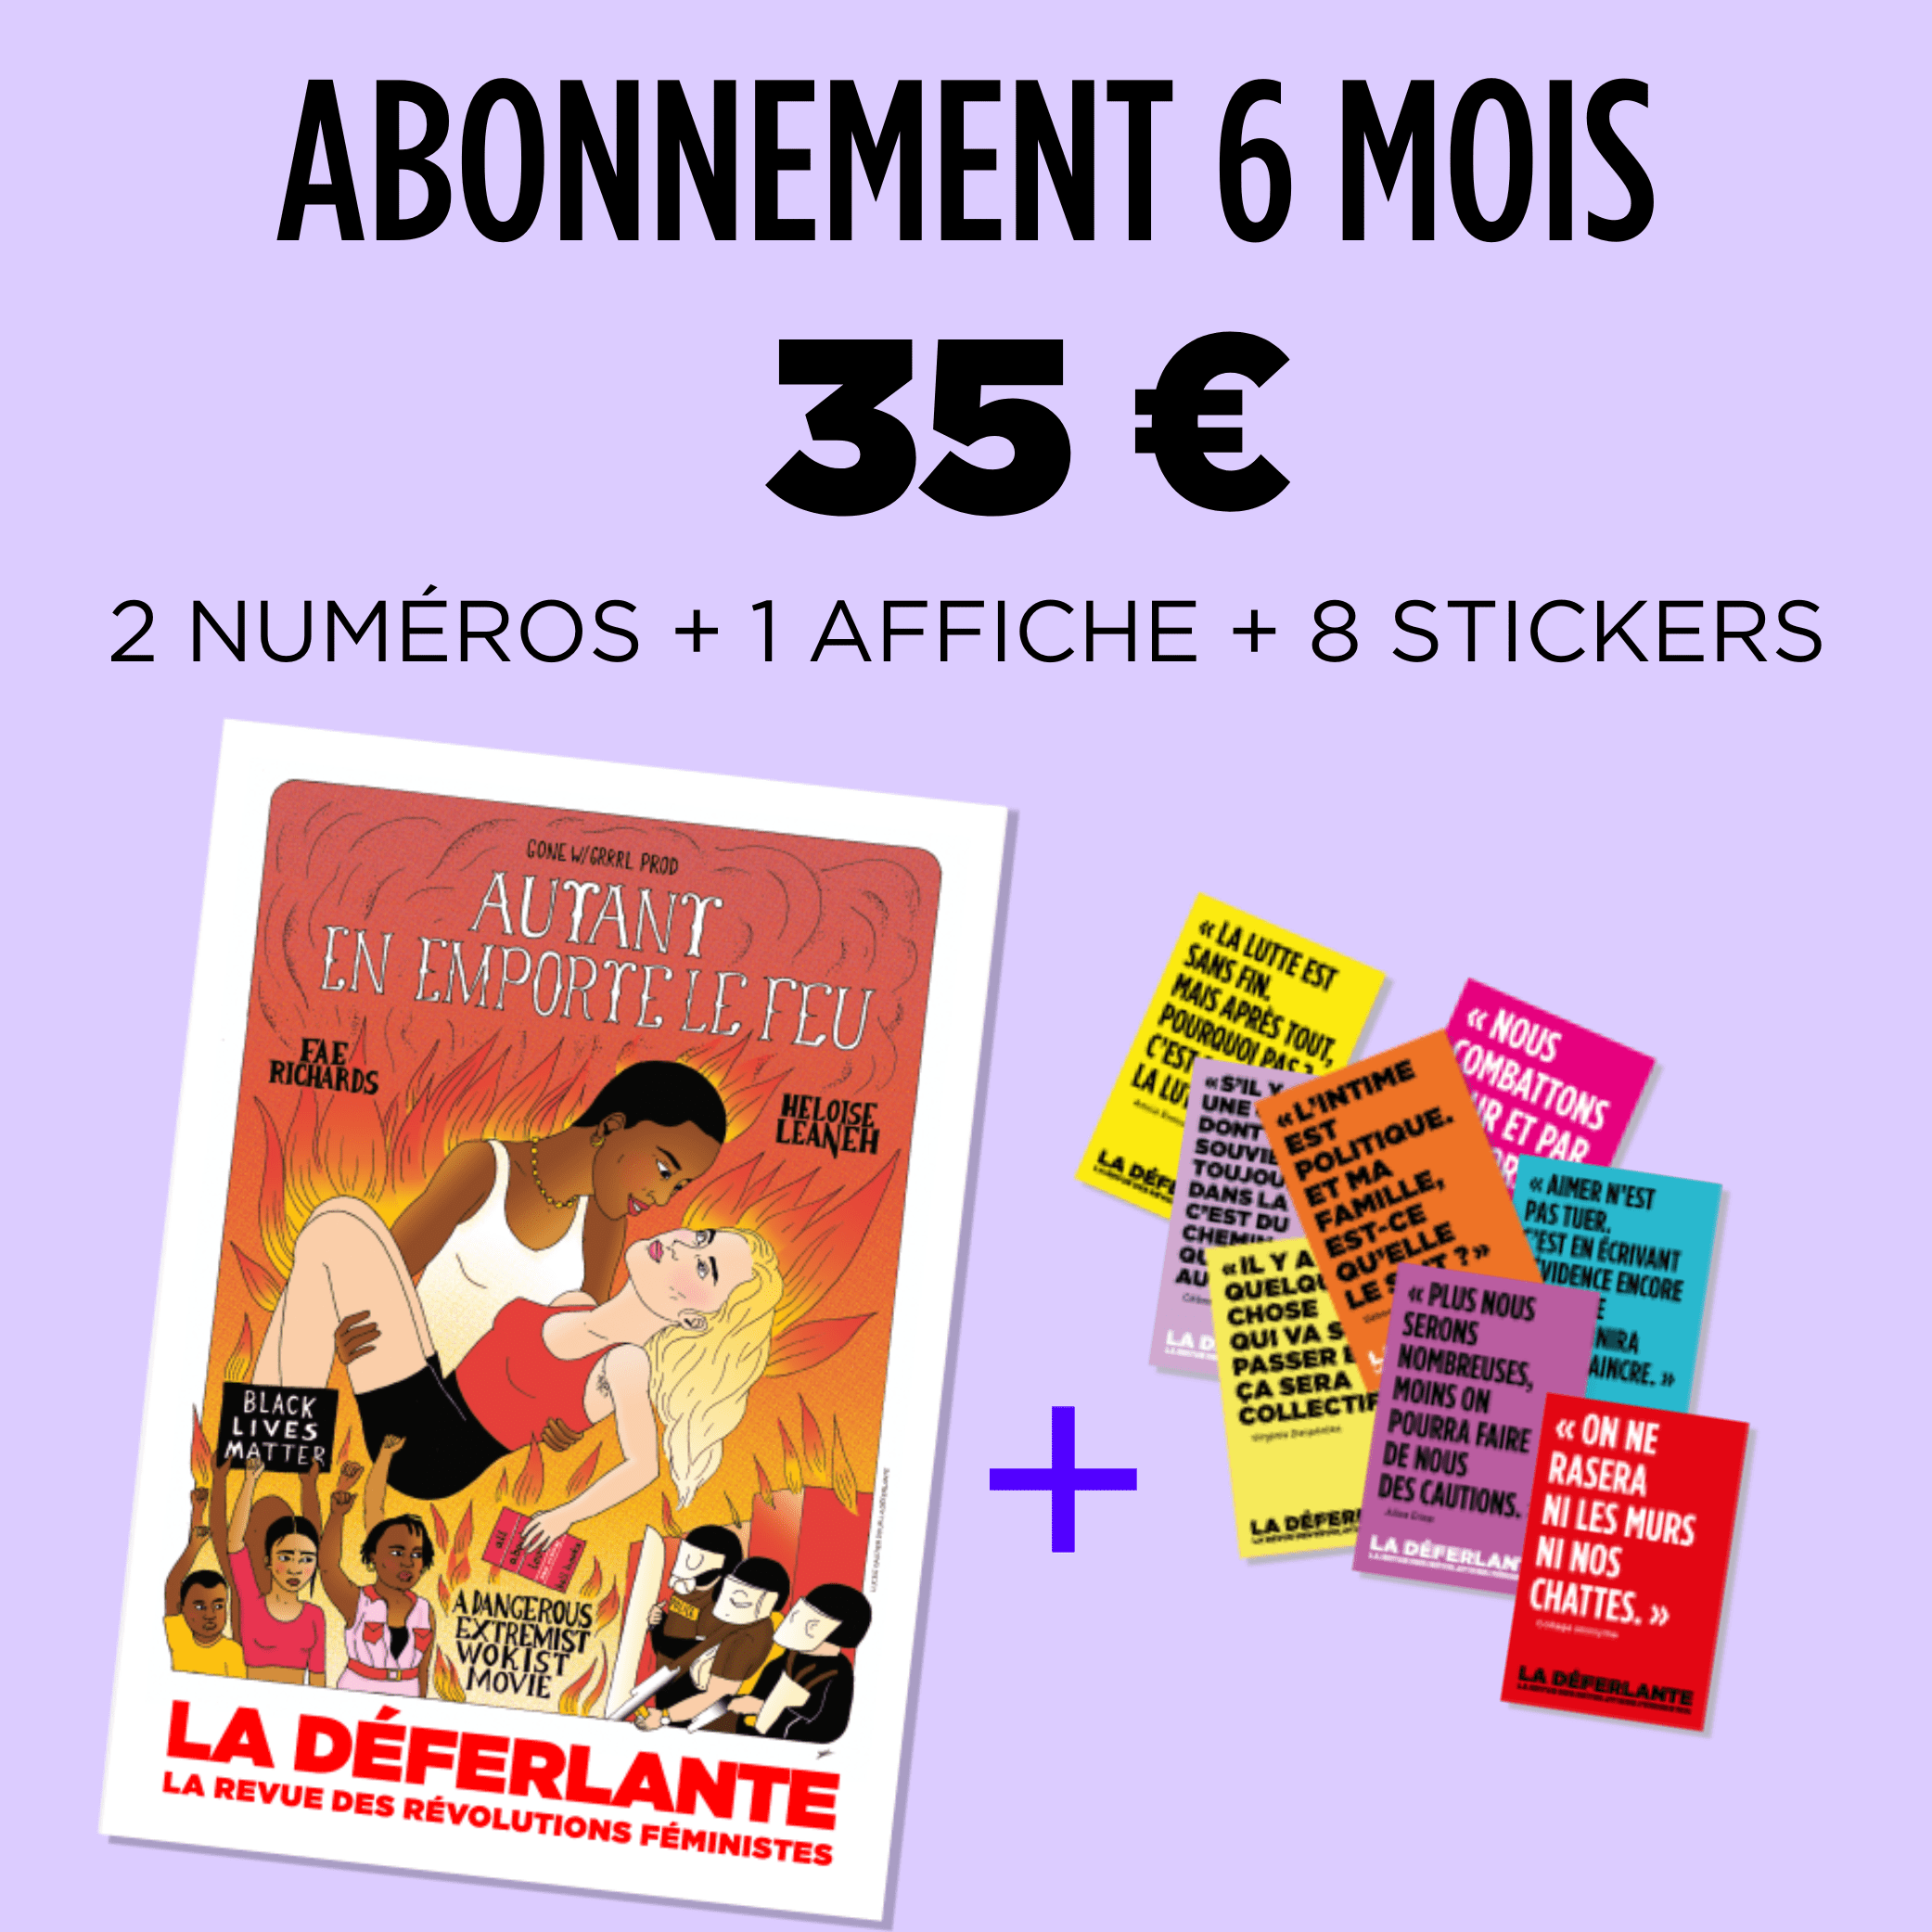 Abonnement 6 mois, 35 € - 2 numéros + 1 affiche + 8 stickers